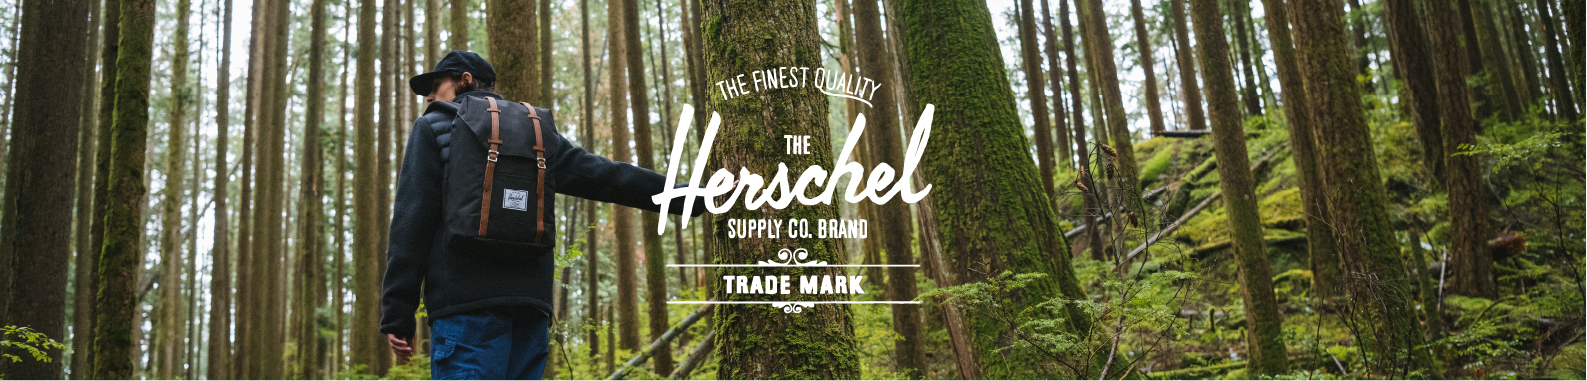 Herschel Supply Co. brand header image